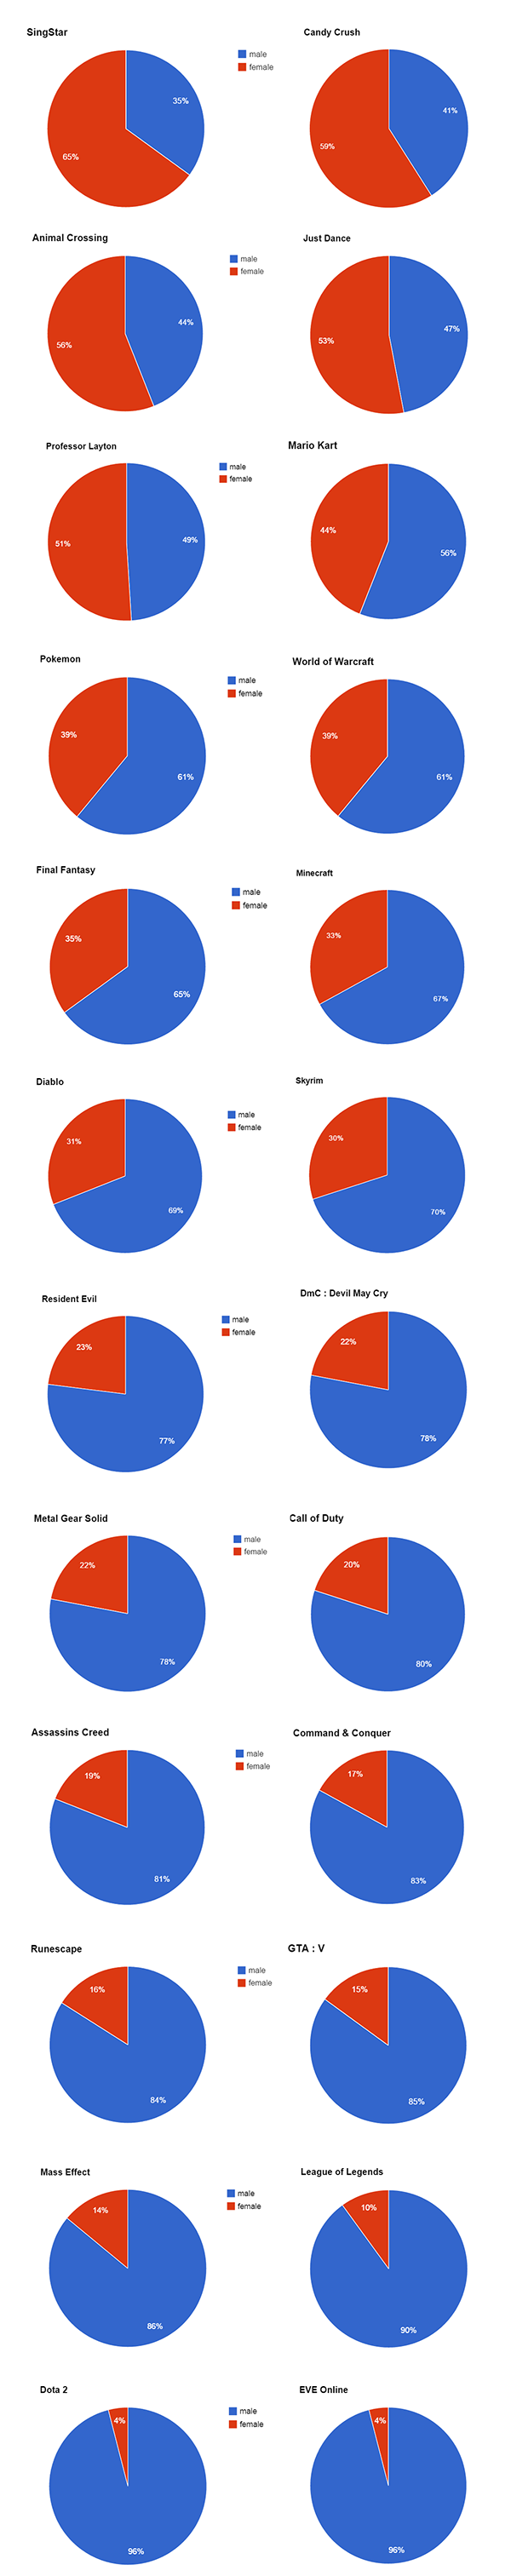 gráfico)Proporção de homens e mulheres em vários jogos ( LOL + H e Singstar  + M)